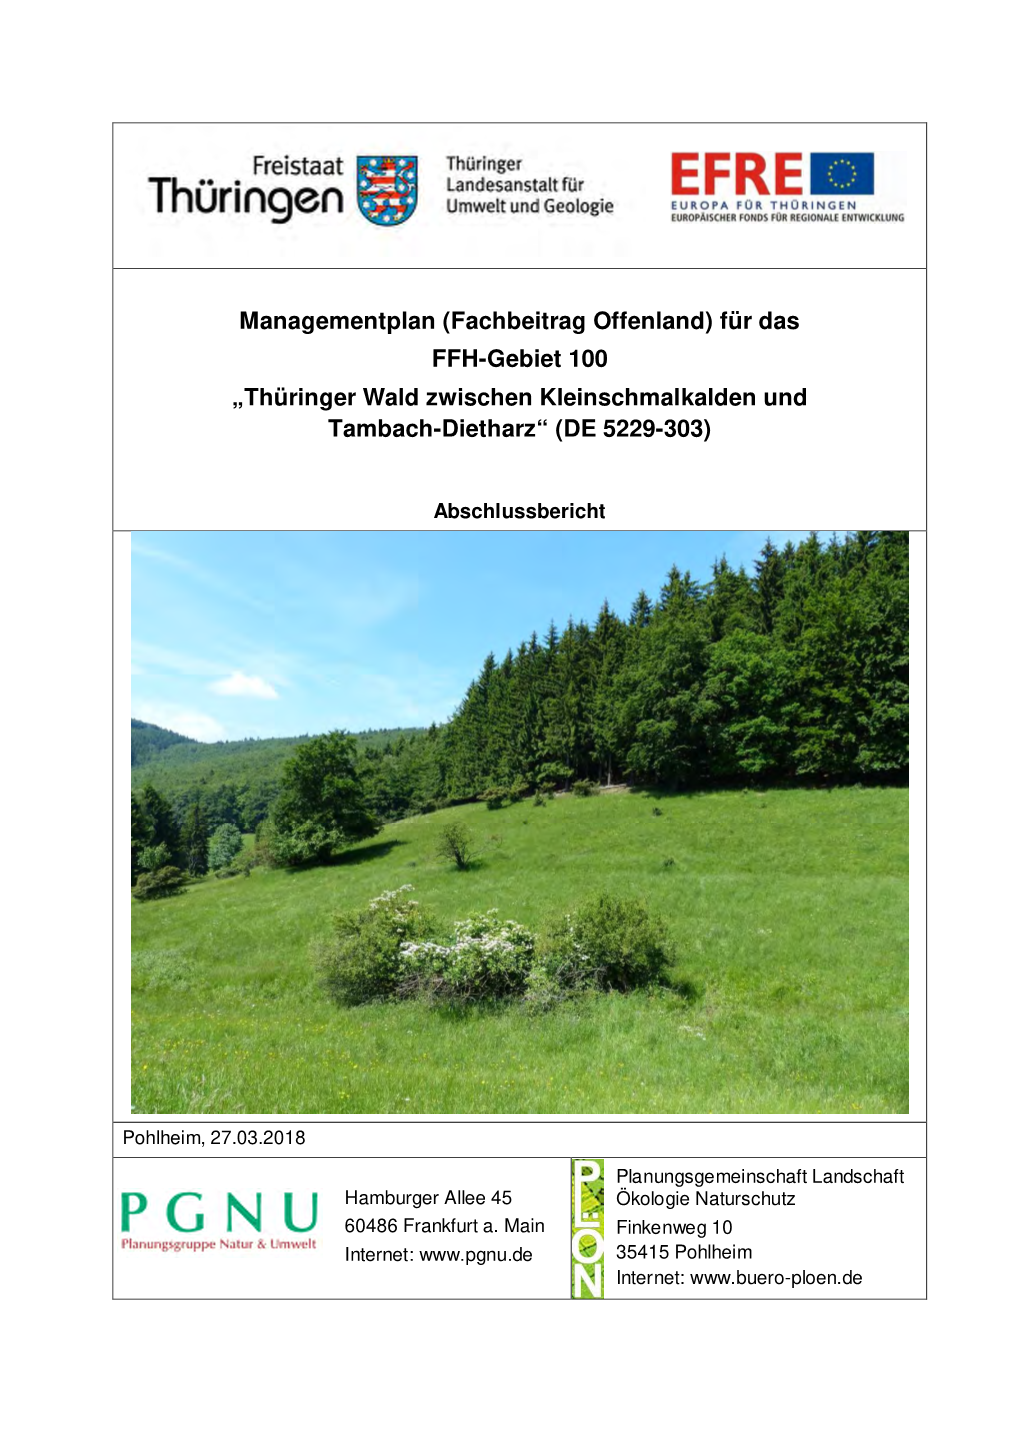 Für Das FFH-Gebiet 100 „Thüringer Wald Zwischen Kleinschmalkalden Und Tambach-Dietharz“ (DE 5229-303)